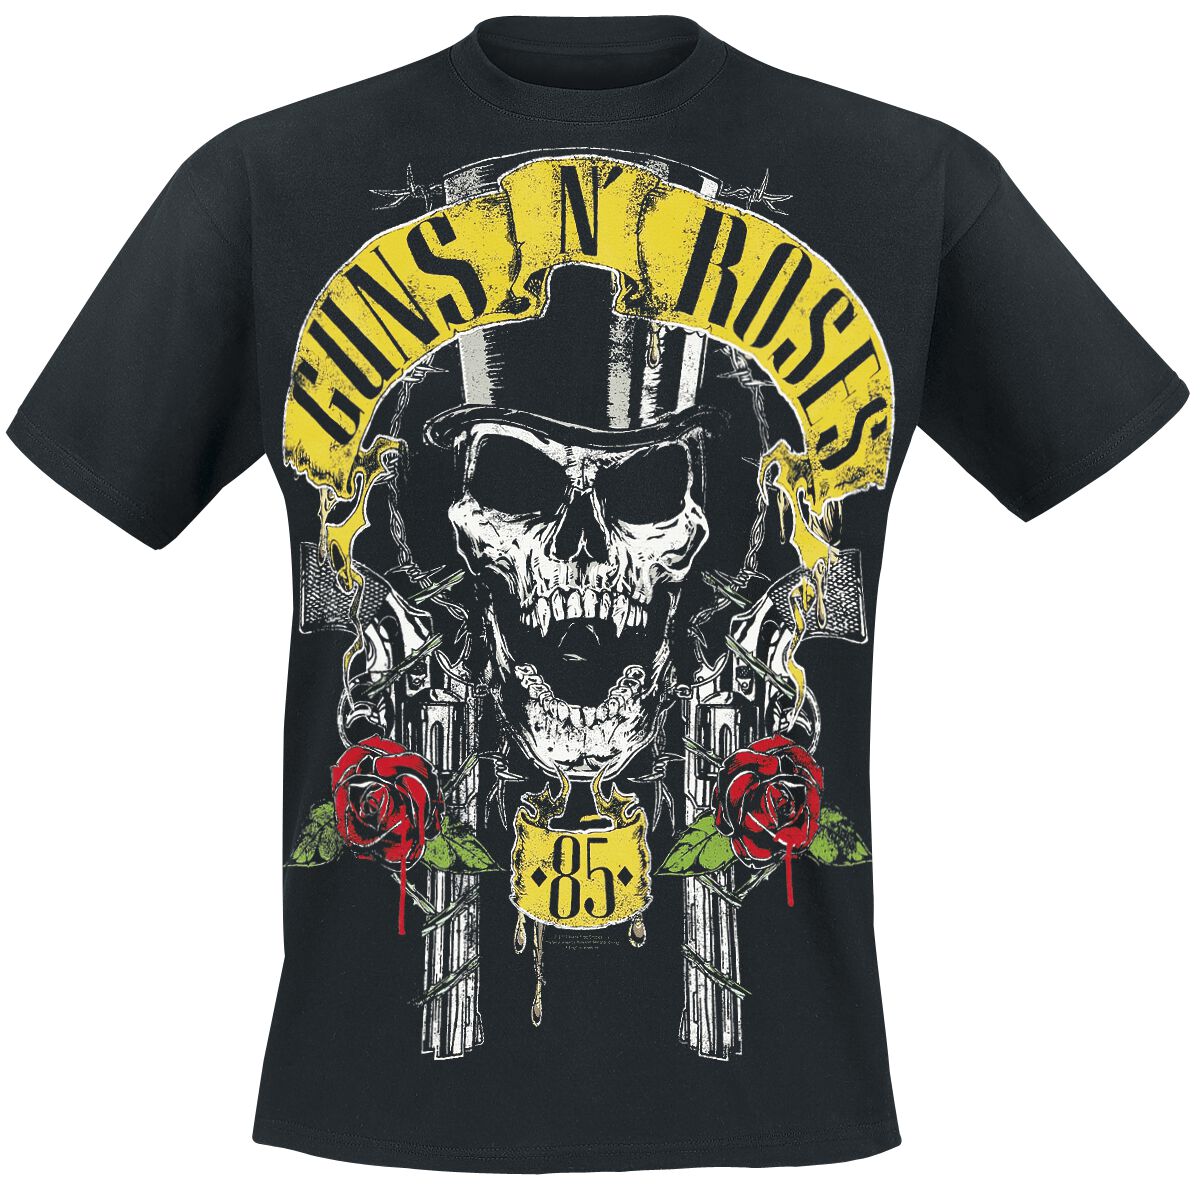 Guns N` Roses T-Shirt - Top Hat - S bis 5XL - für Männer - Größe XXL - schwarz  - Lizenziertes Merchandise!